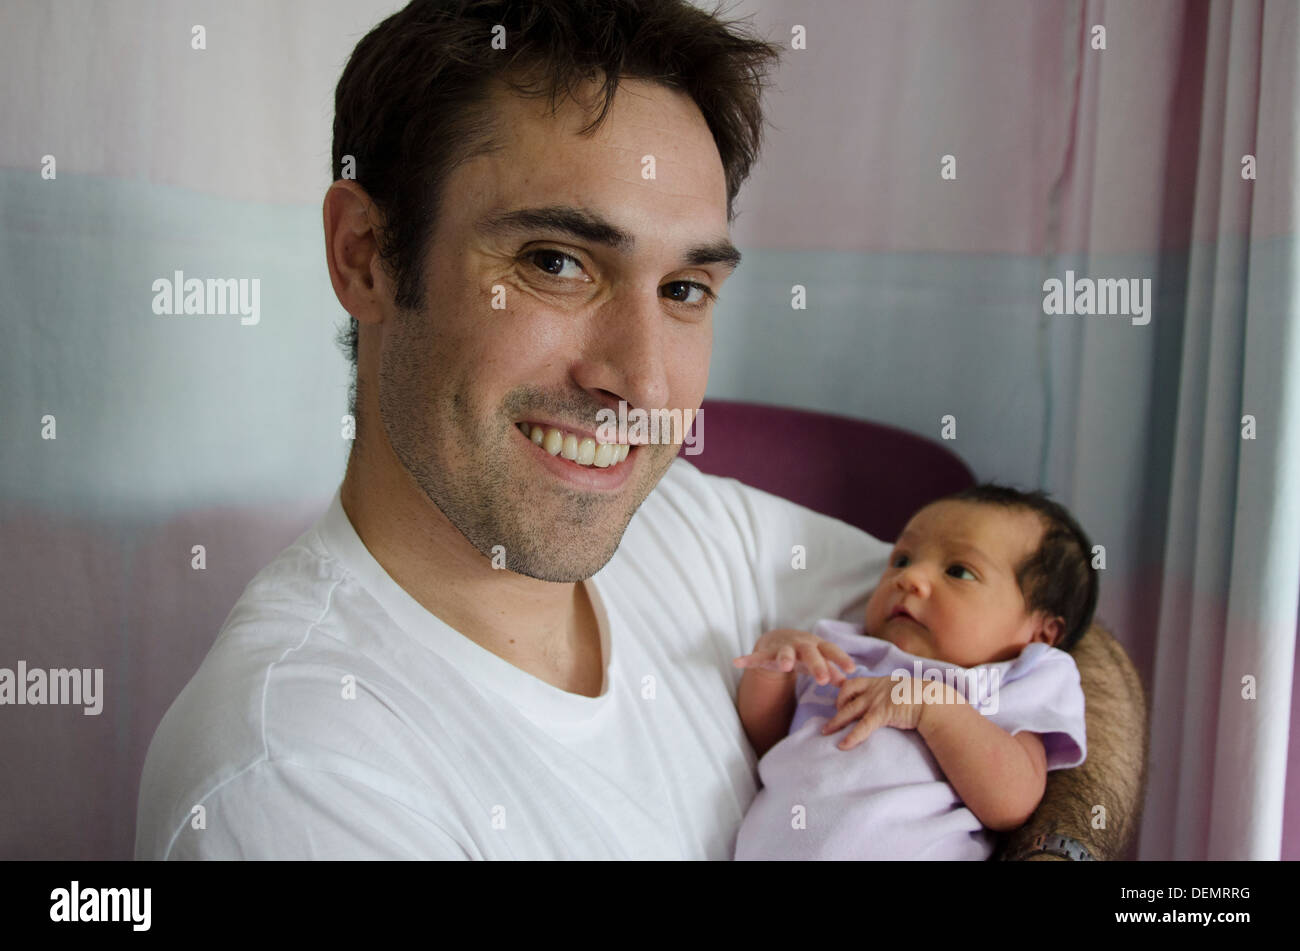 Fier papa avec bébé nouveau-né de moins d'un jour Banque D'Images